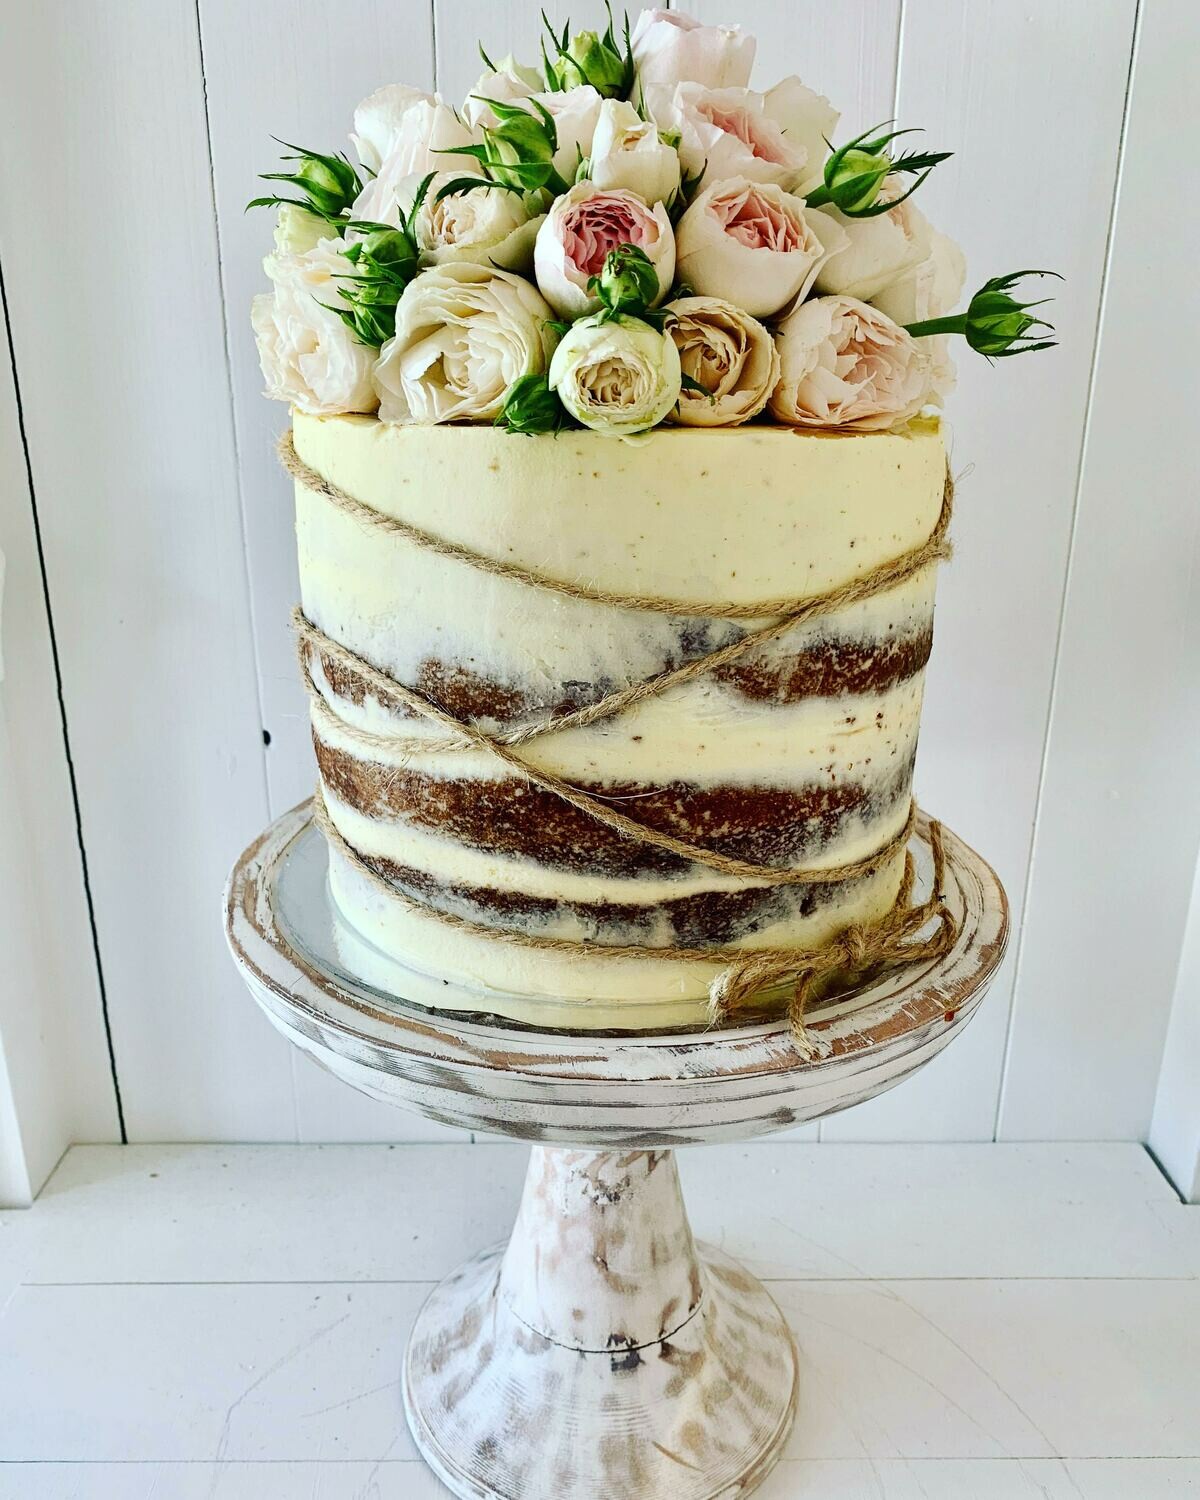 Whitewashed Cake with Fresh Roses & Twine Wrap